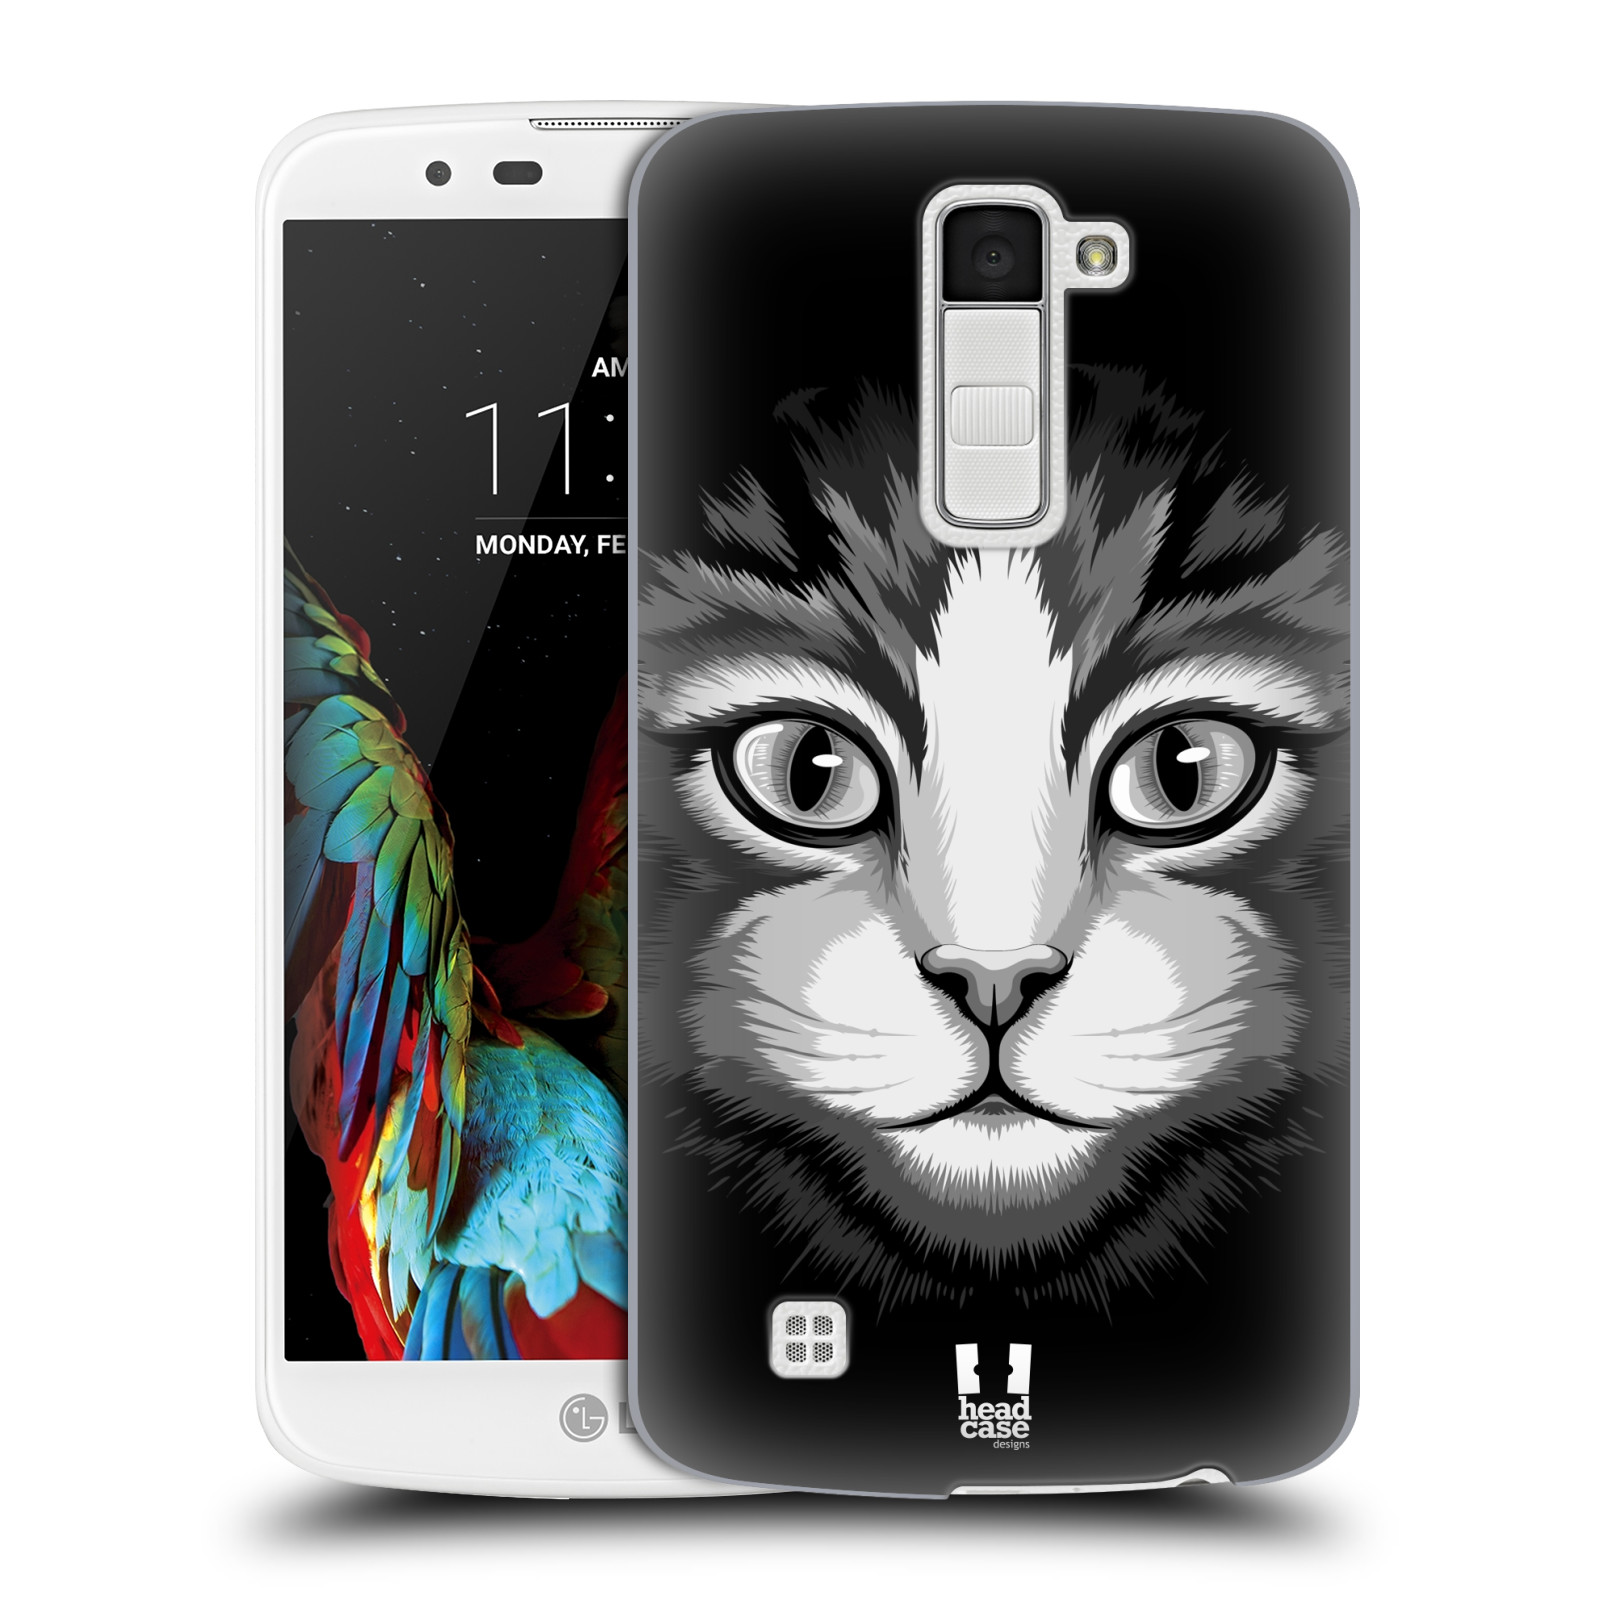 HEAD CASE plastový obal na mobil LG K10 vzor Zvíře kreslená tvář 2 kočička